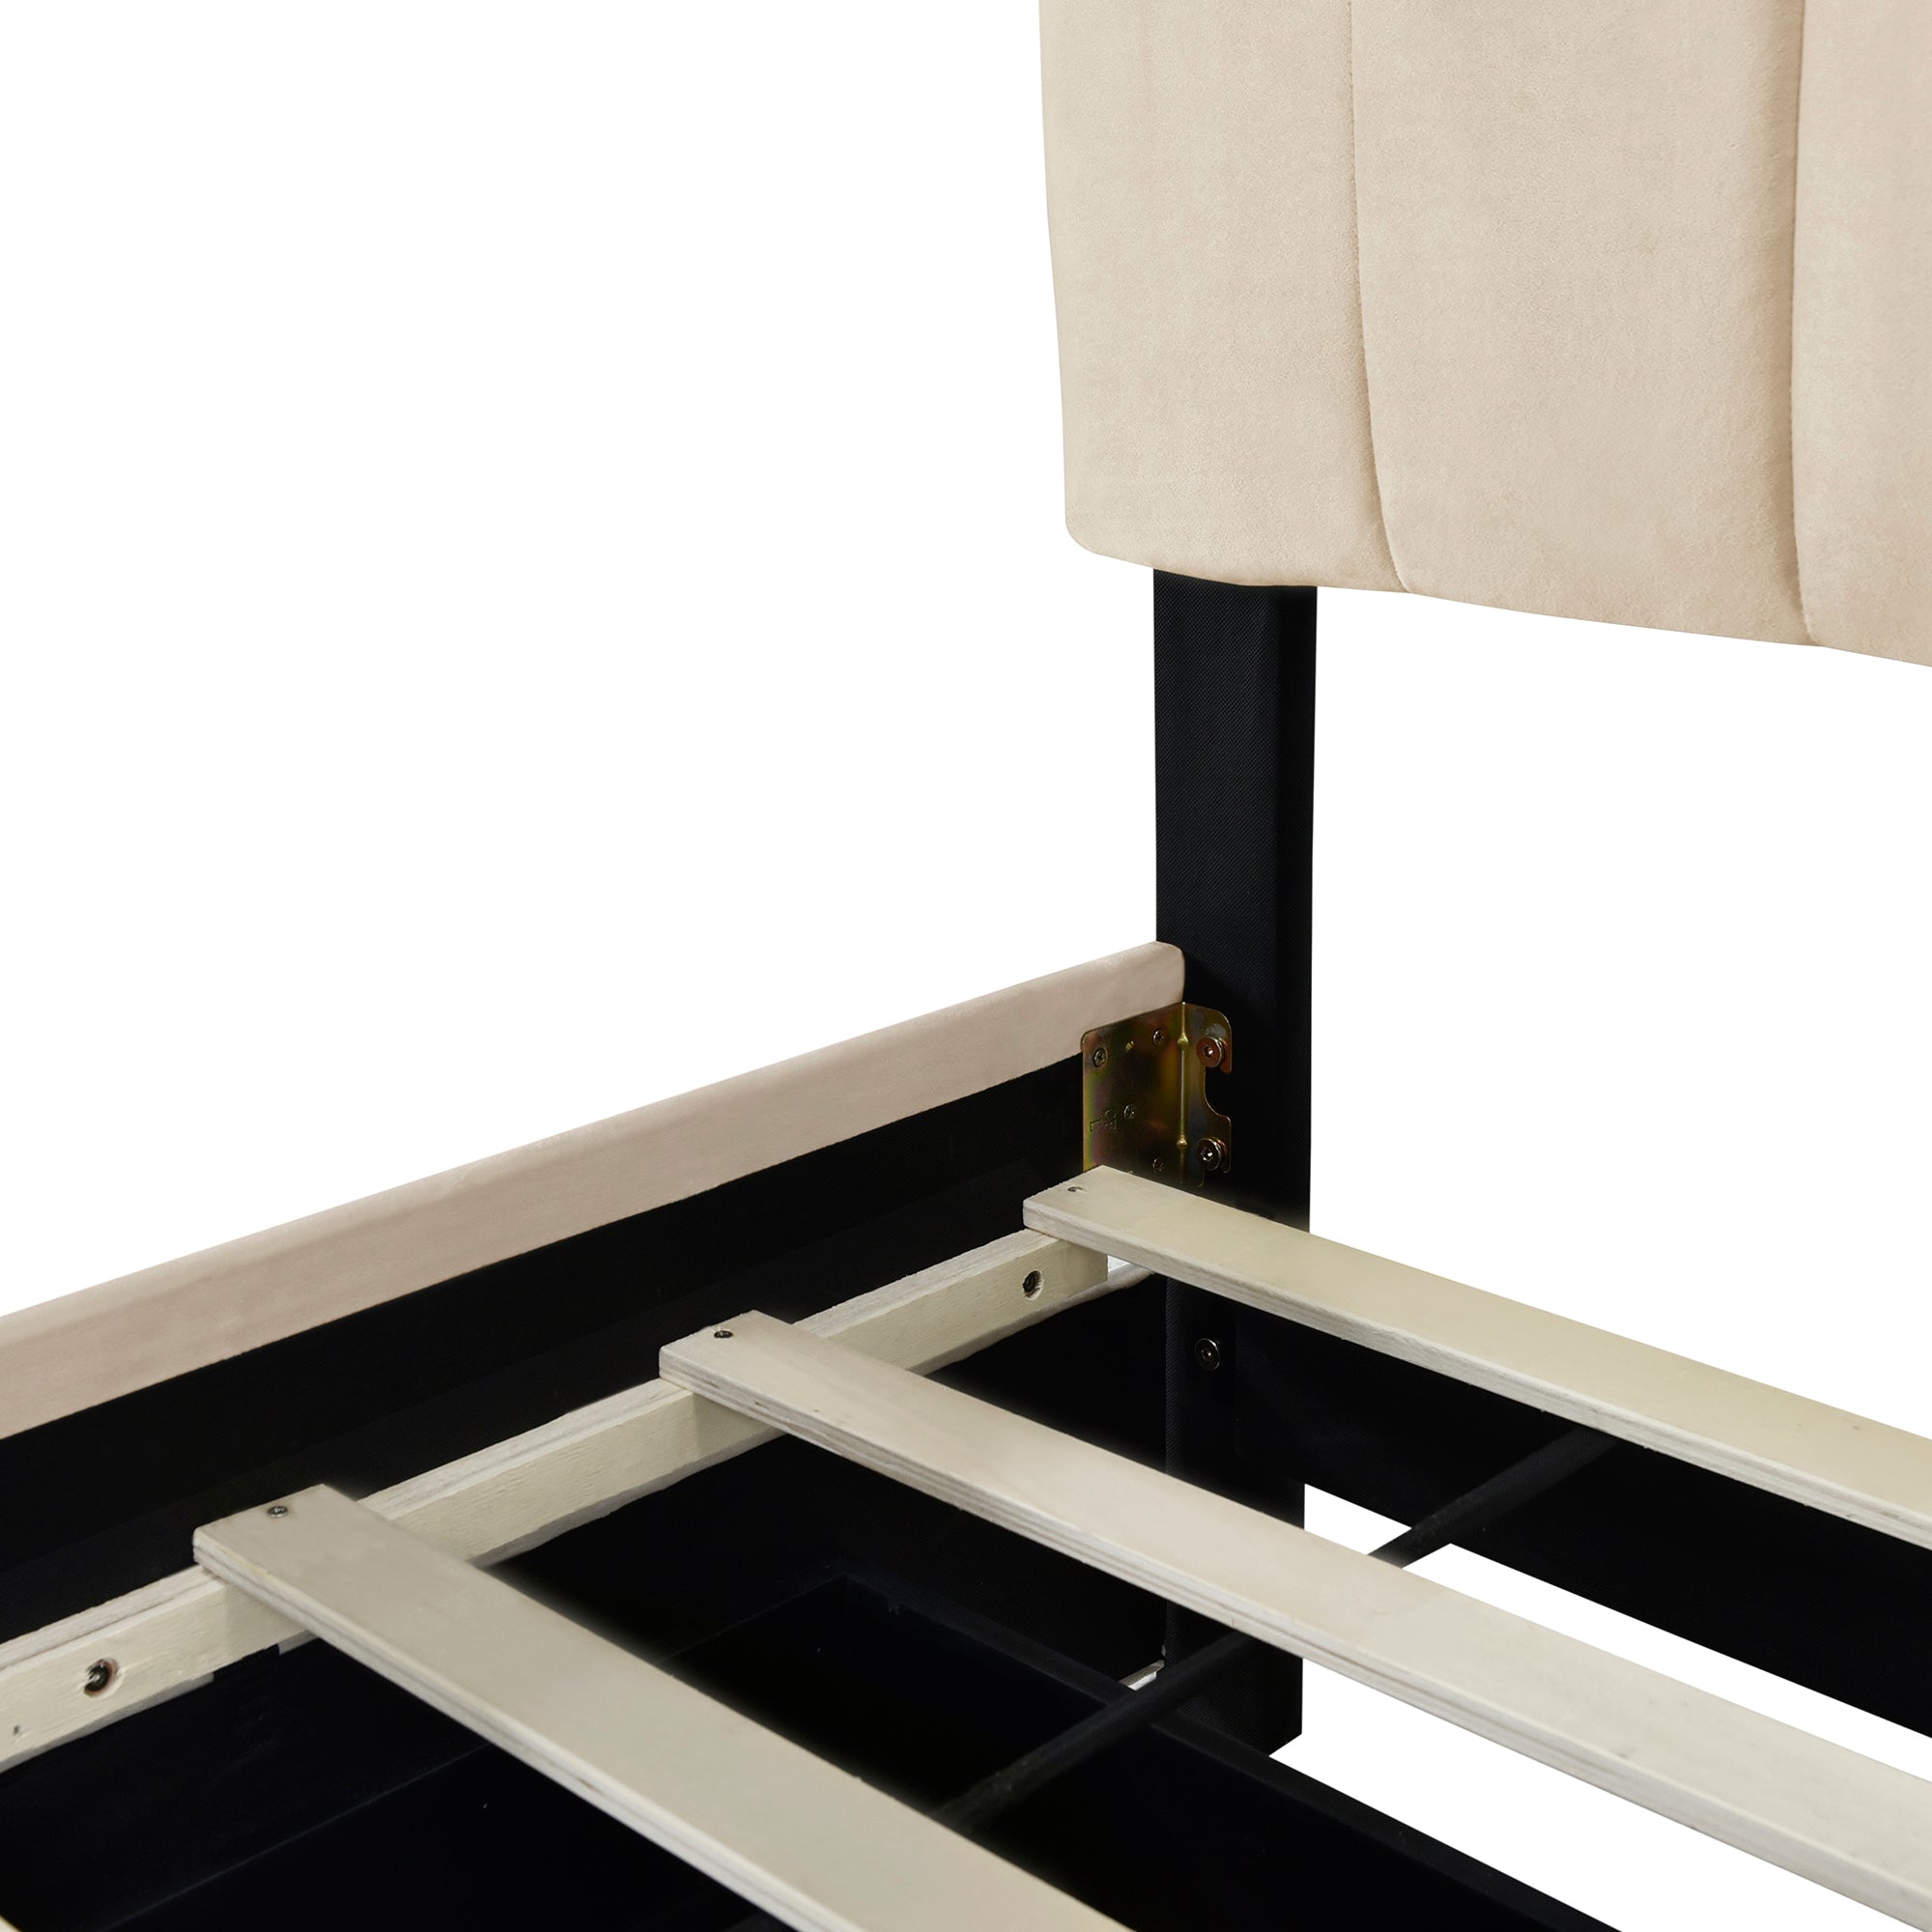 Queen Size Velvet Upholstered Platform Bed with 2 beige-upholstered